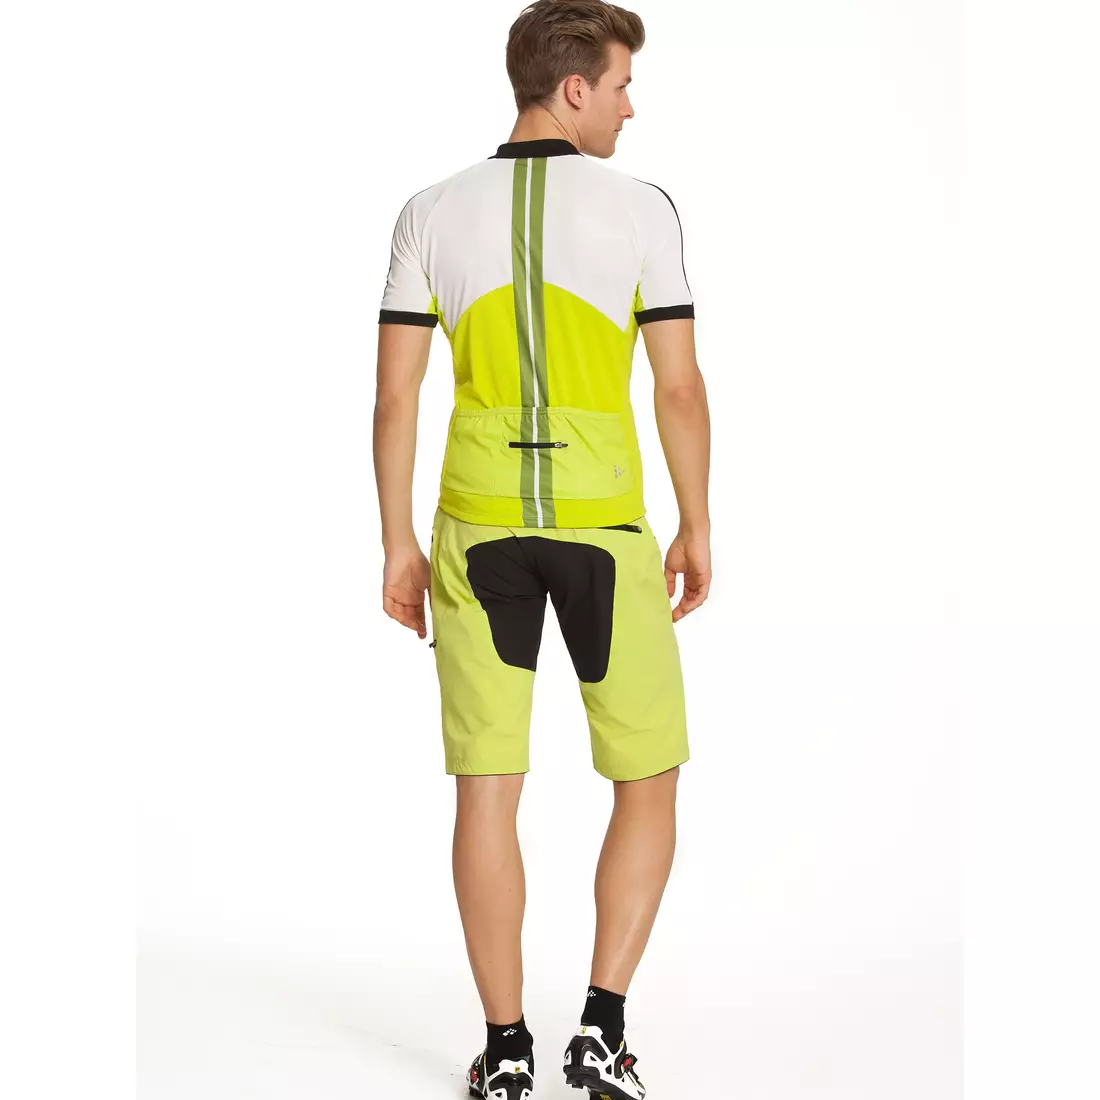 Pantaloni scurți pentru ciclism CRAFT Trail Bike Shorts pentru bărbați 1902632-2645, culoare: verde